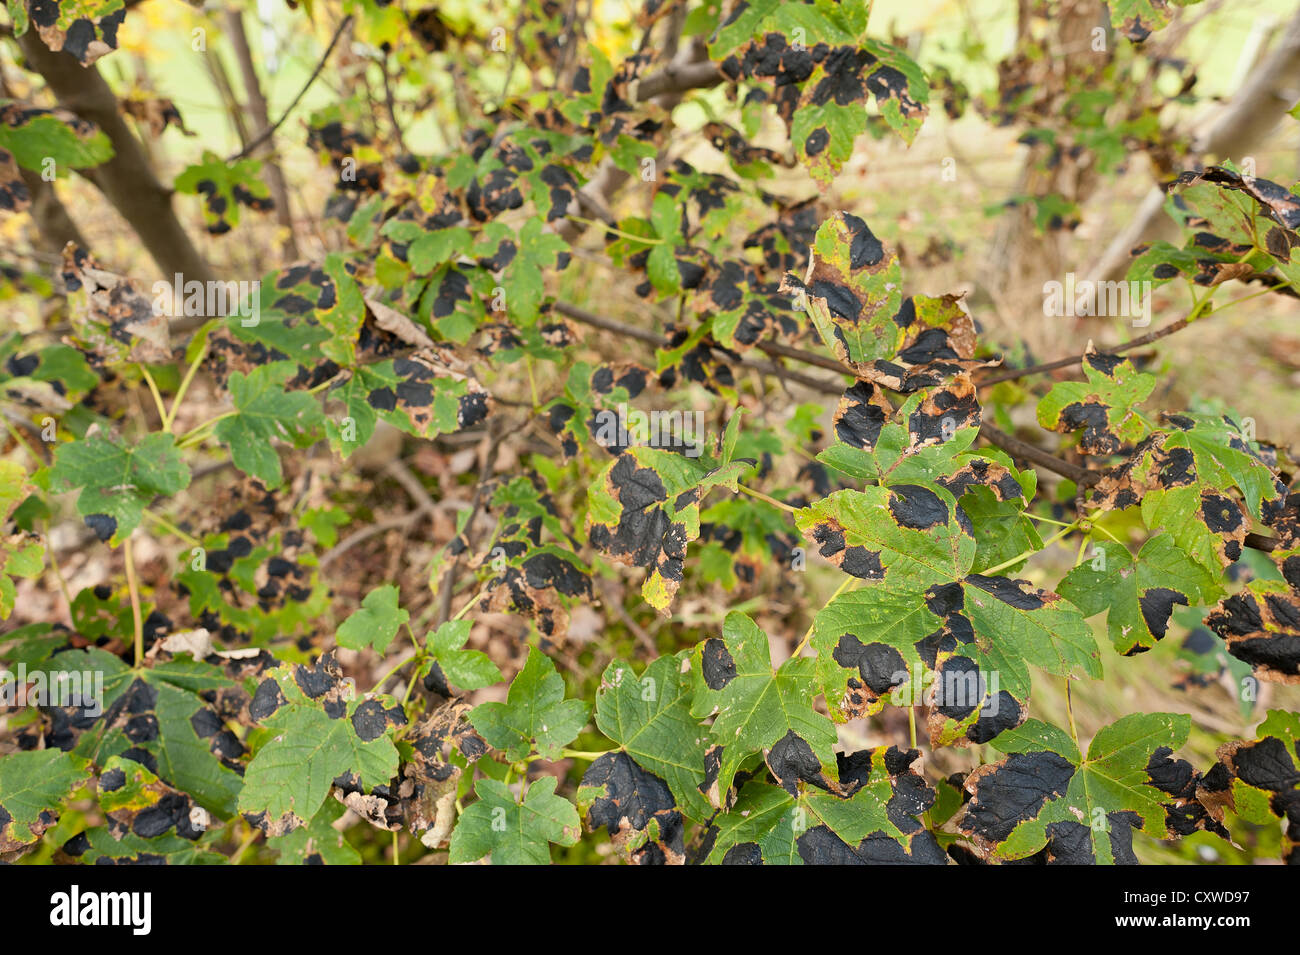 infizierten Ahorn Baum Teer Fleck Rhytisma Acerinum einen Pilz auf Ahorn Blätter blackspot Stockfoto